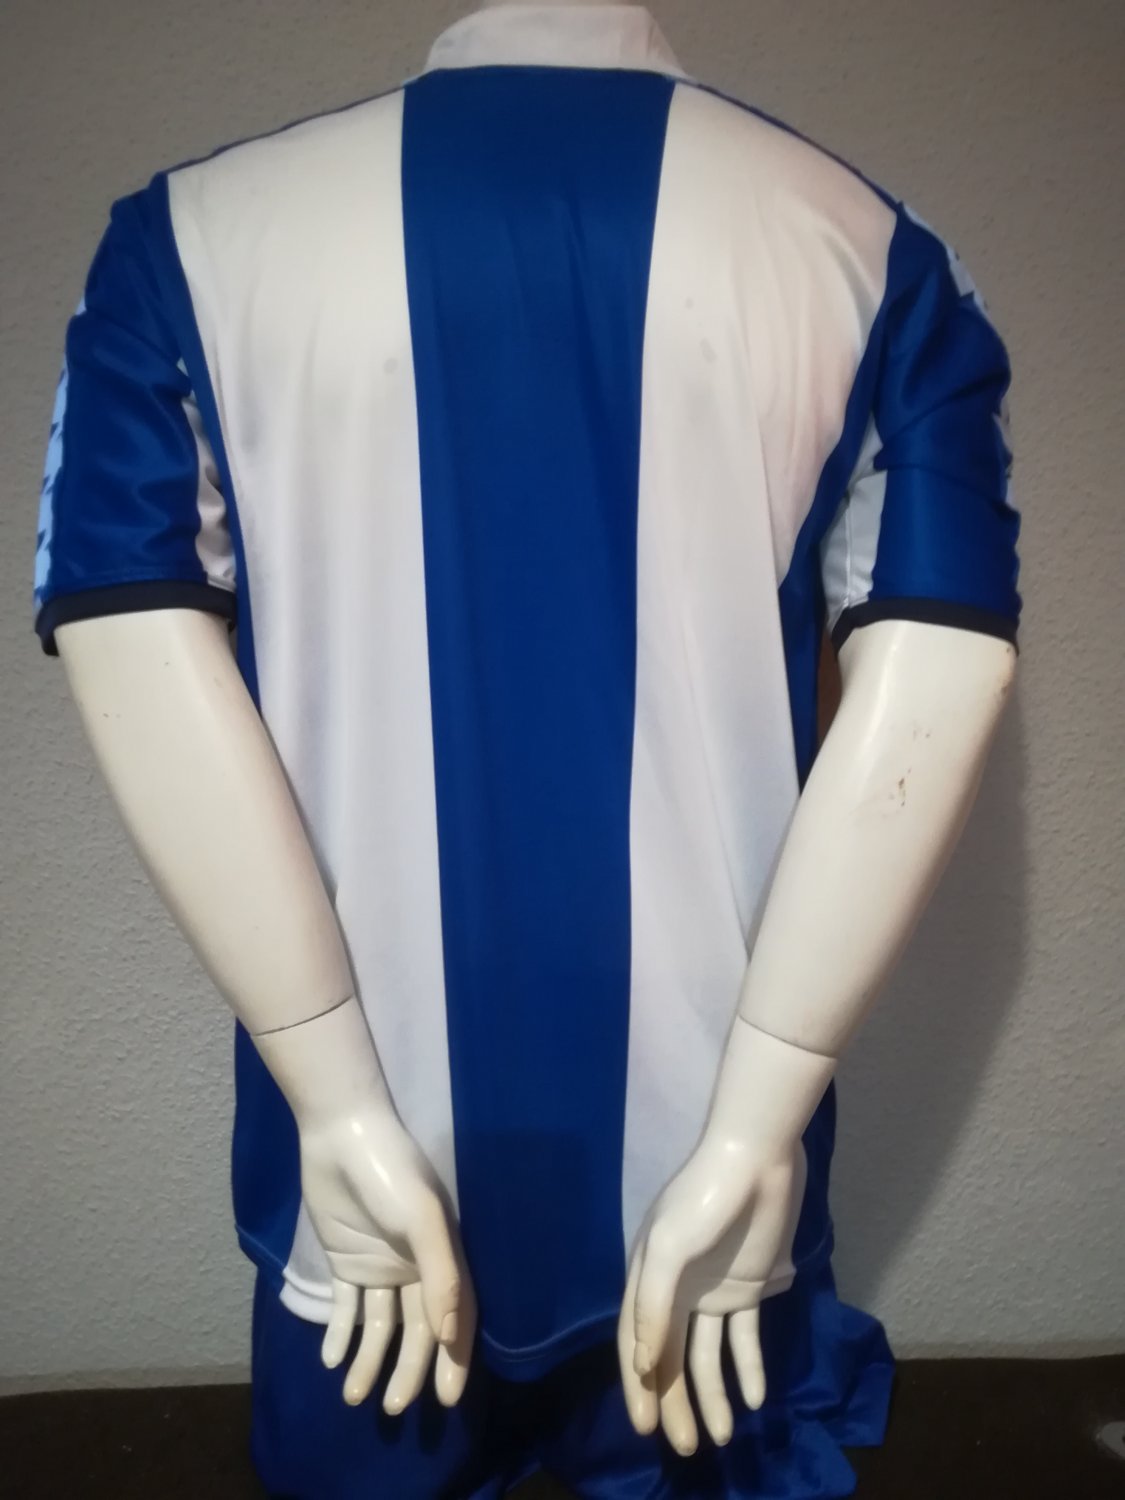 inundar De todos modos Alargar Alaves Retro Replicas Camiseta de Fútbol 1983 - 1984.